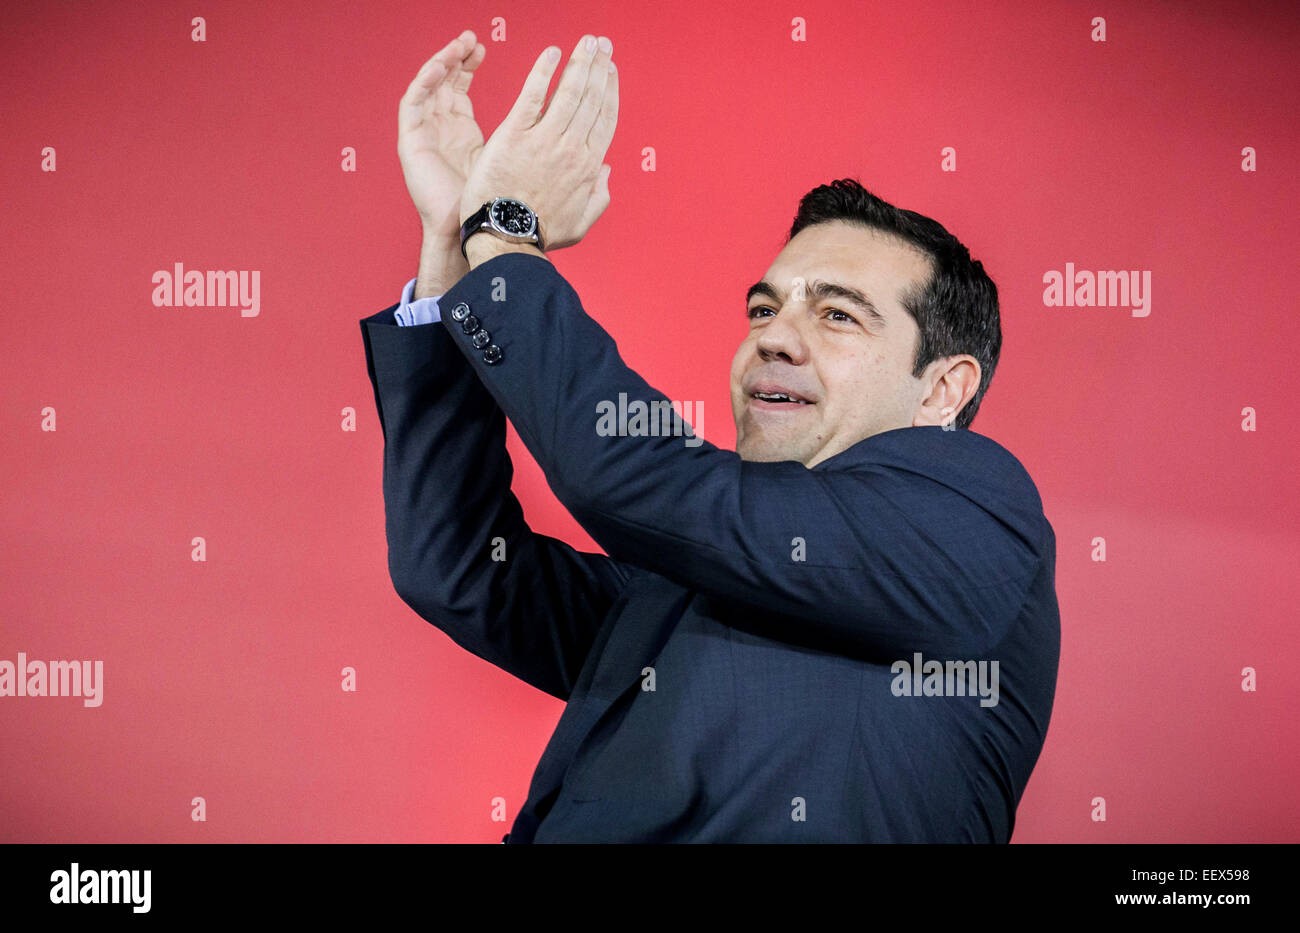 Atene, Grecia. Il 22 gennaio, 2015. Alexis Tsipras, leader della sinistra-ala principale partito di opposizione SYRIZA, parla ai tifosi nel corso degli ultimi rally preelection in Atene, 22 gennaio 2015. La Grecia di sinistra, anti-austerità partito Syriza ha ampliato il suo vantaggio su altre parti prima del 25 gennaio 2015 elezione, i sondaggi di opinione dimostrano. Michael Kappeler/dpa/Alamy Live News Foto Stock